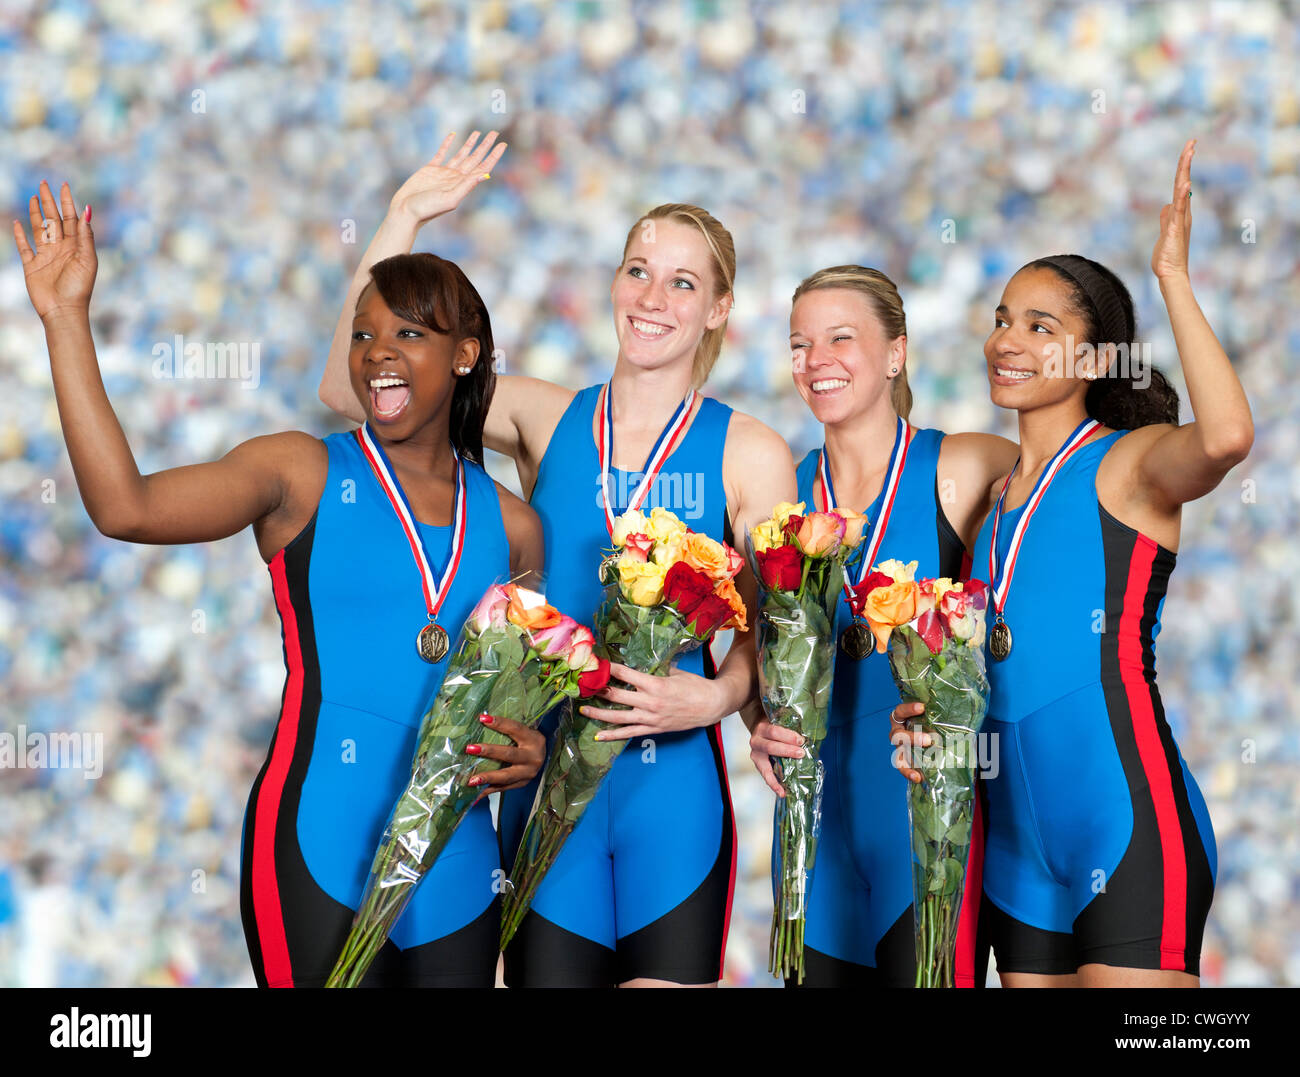 Les sportives avec des médailles holding bouquets Banque D'Images